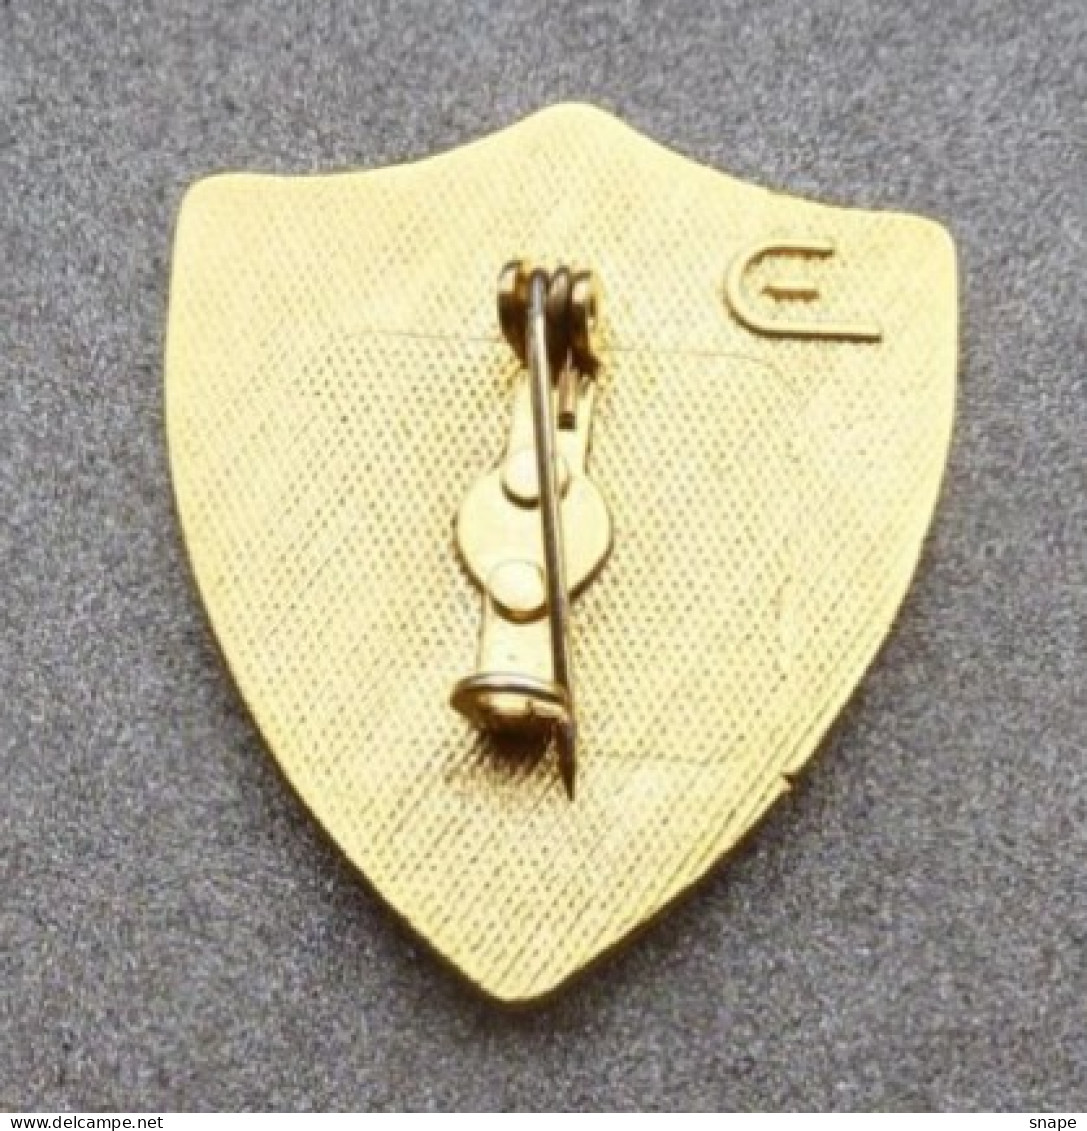 Distintivo Vetrificato - Carabinieri Centro Elicotteri - Usato Obsoleto - Italian Police Carabinieri Insignia (283) - Polizei